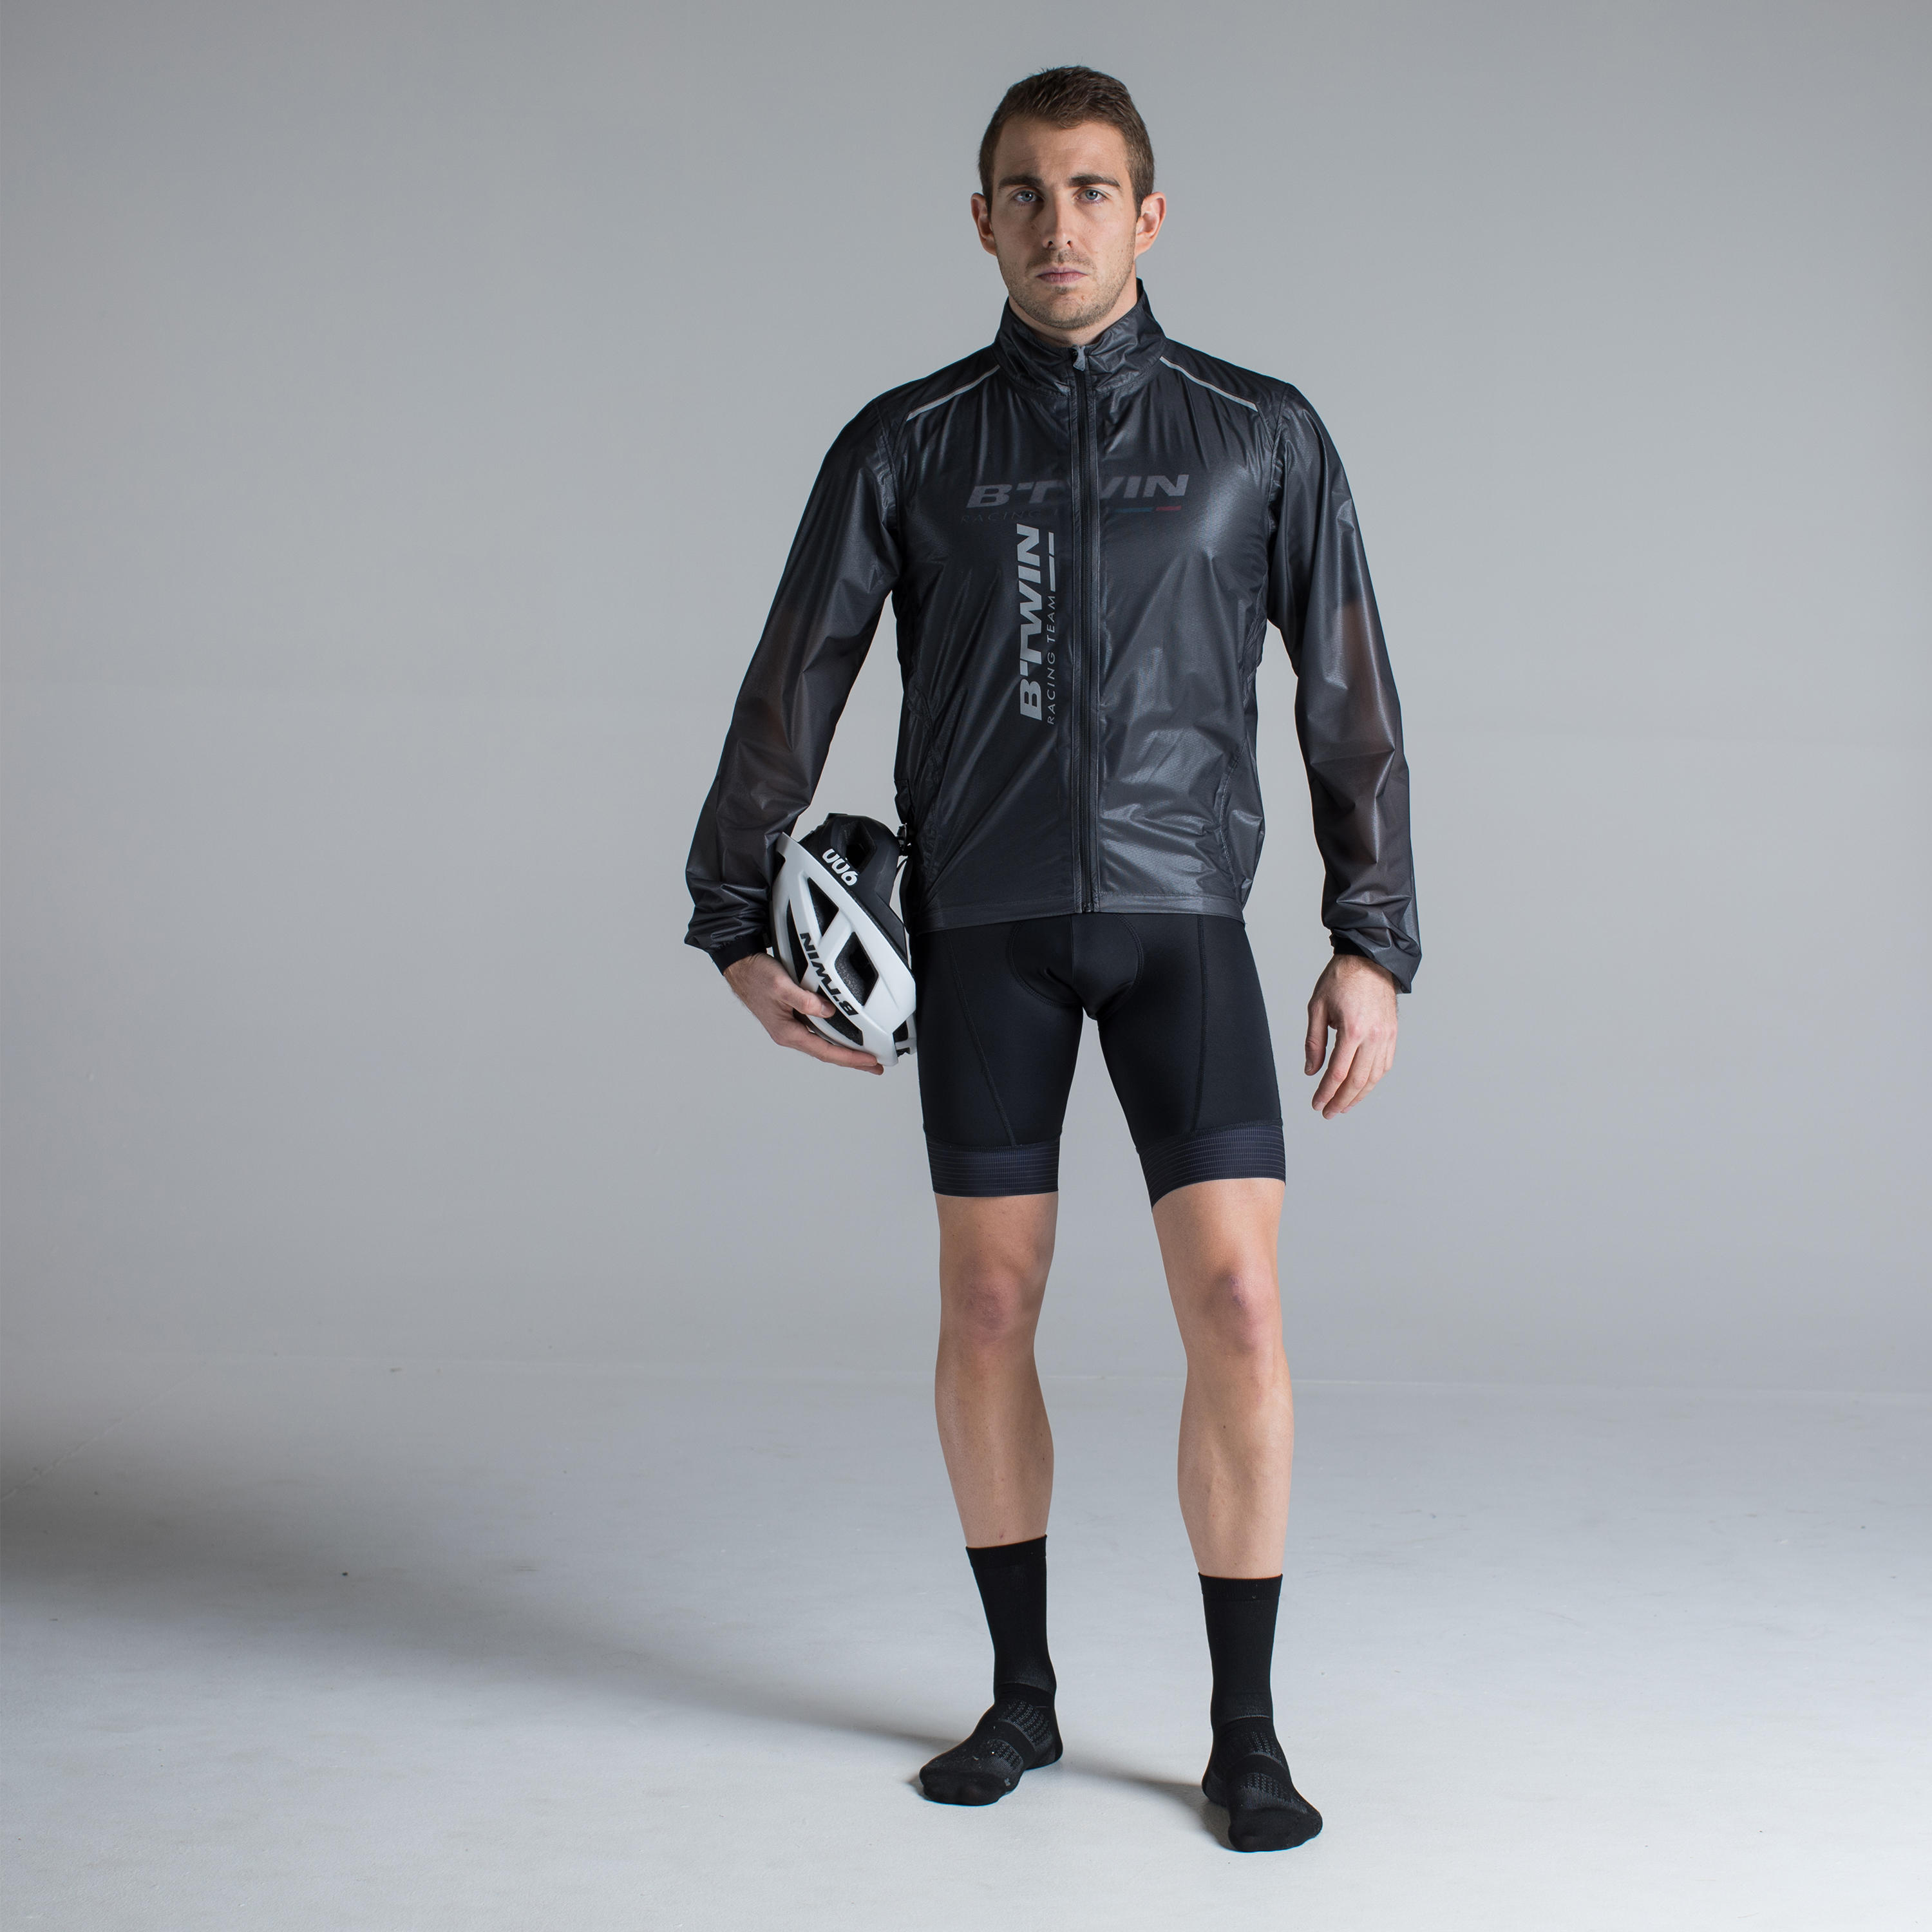 เสื้อกันฝนสำหรับปั่นจักรยานรุ่น Ultralight Sport Road เสื้อผ้า จักรยานเสือหมอบ เสื้อแจ็คเก็ต เสื้อ